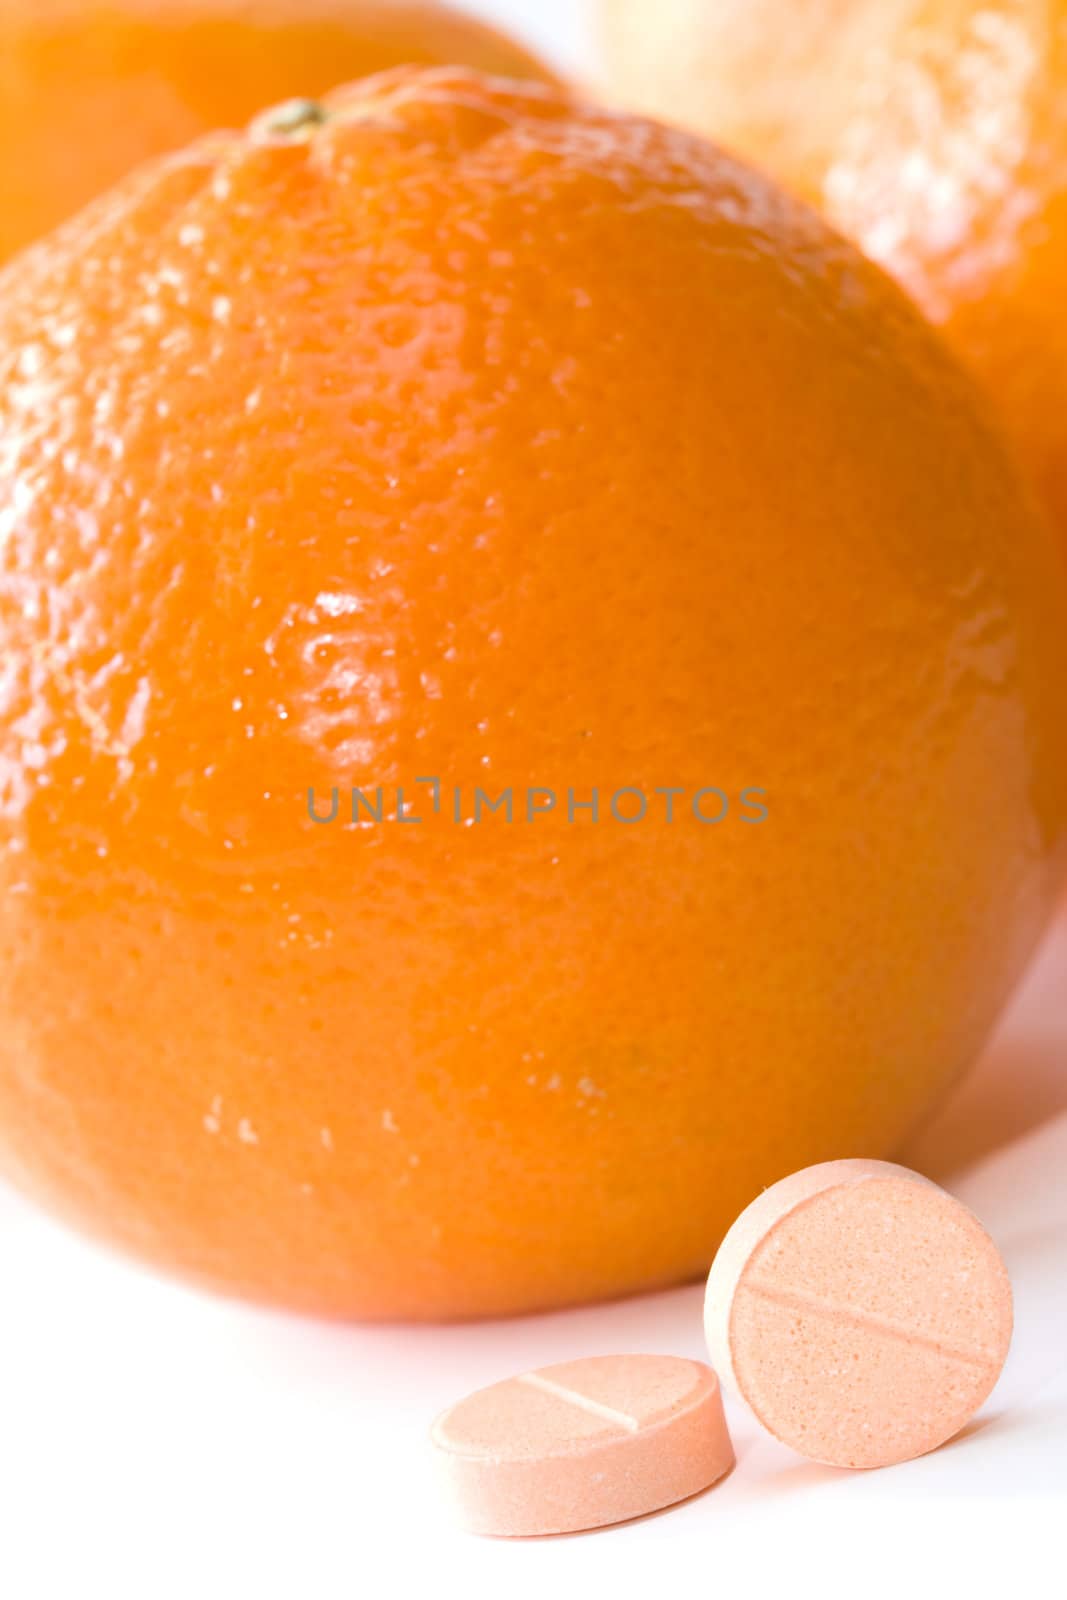 Vitamin C by Kenishirotie